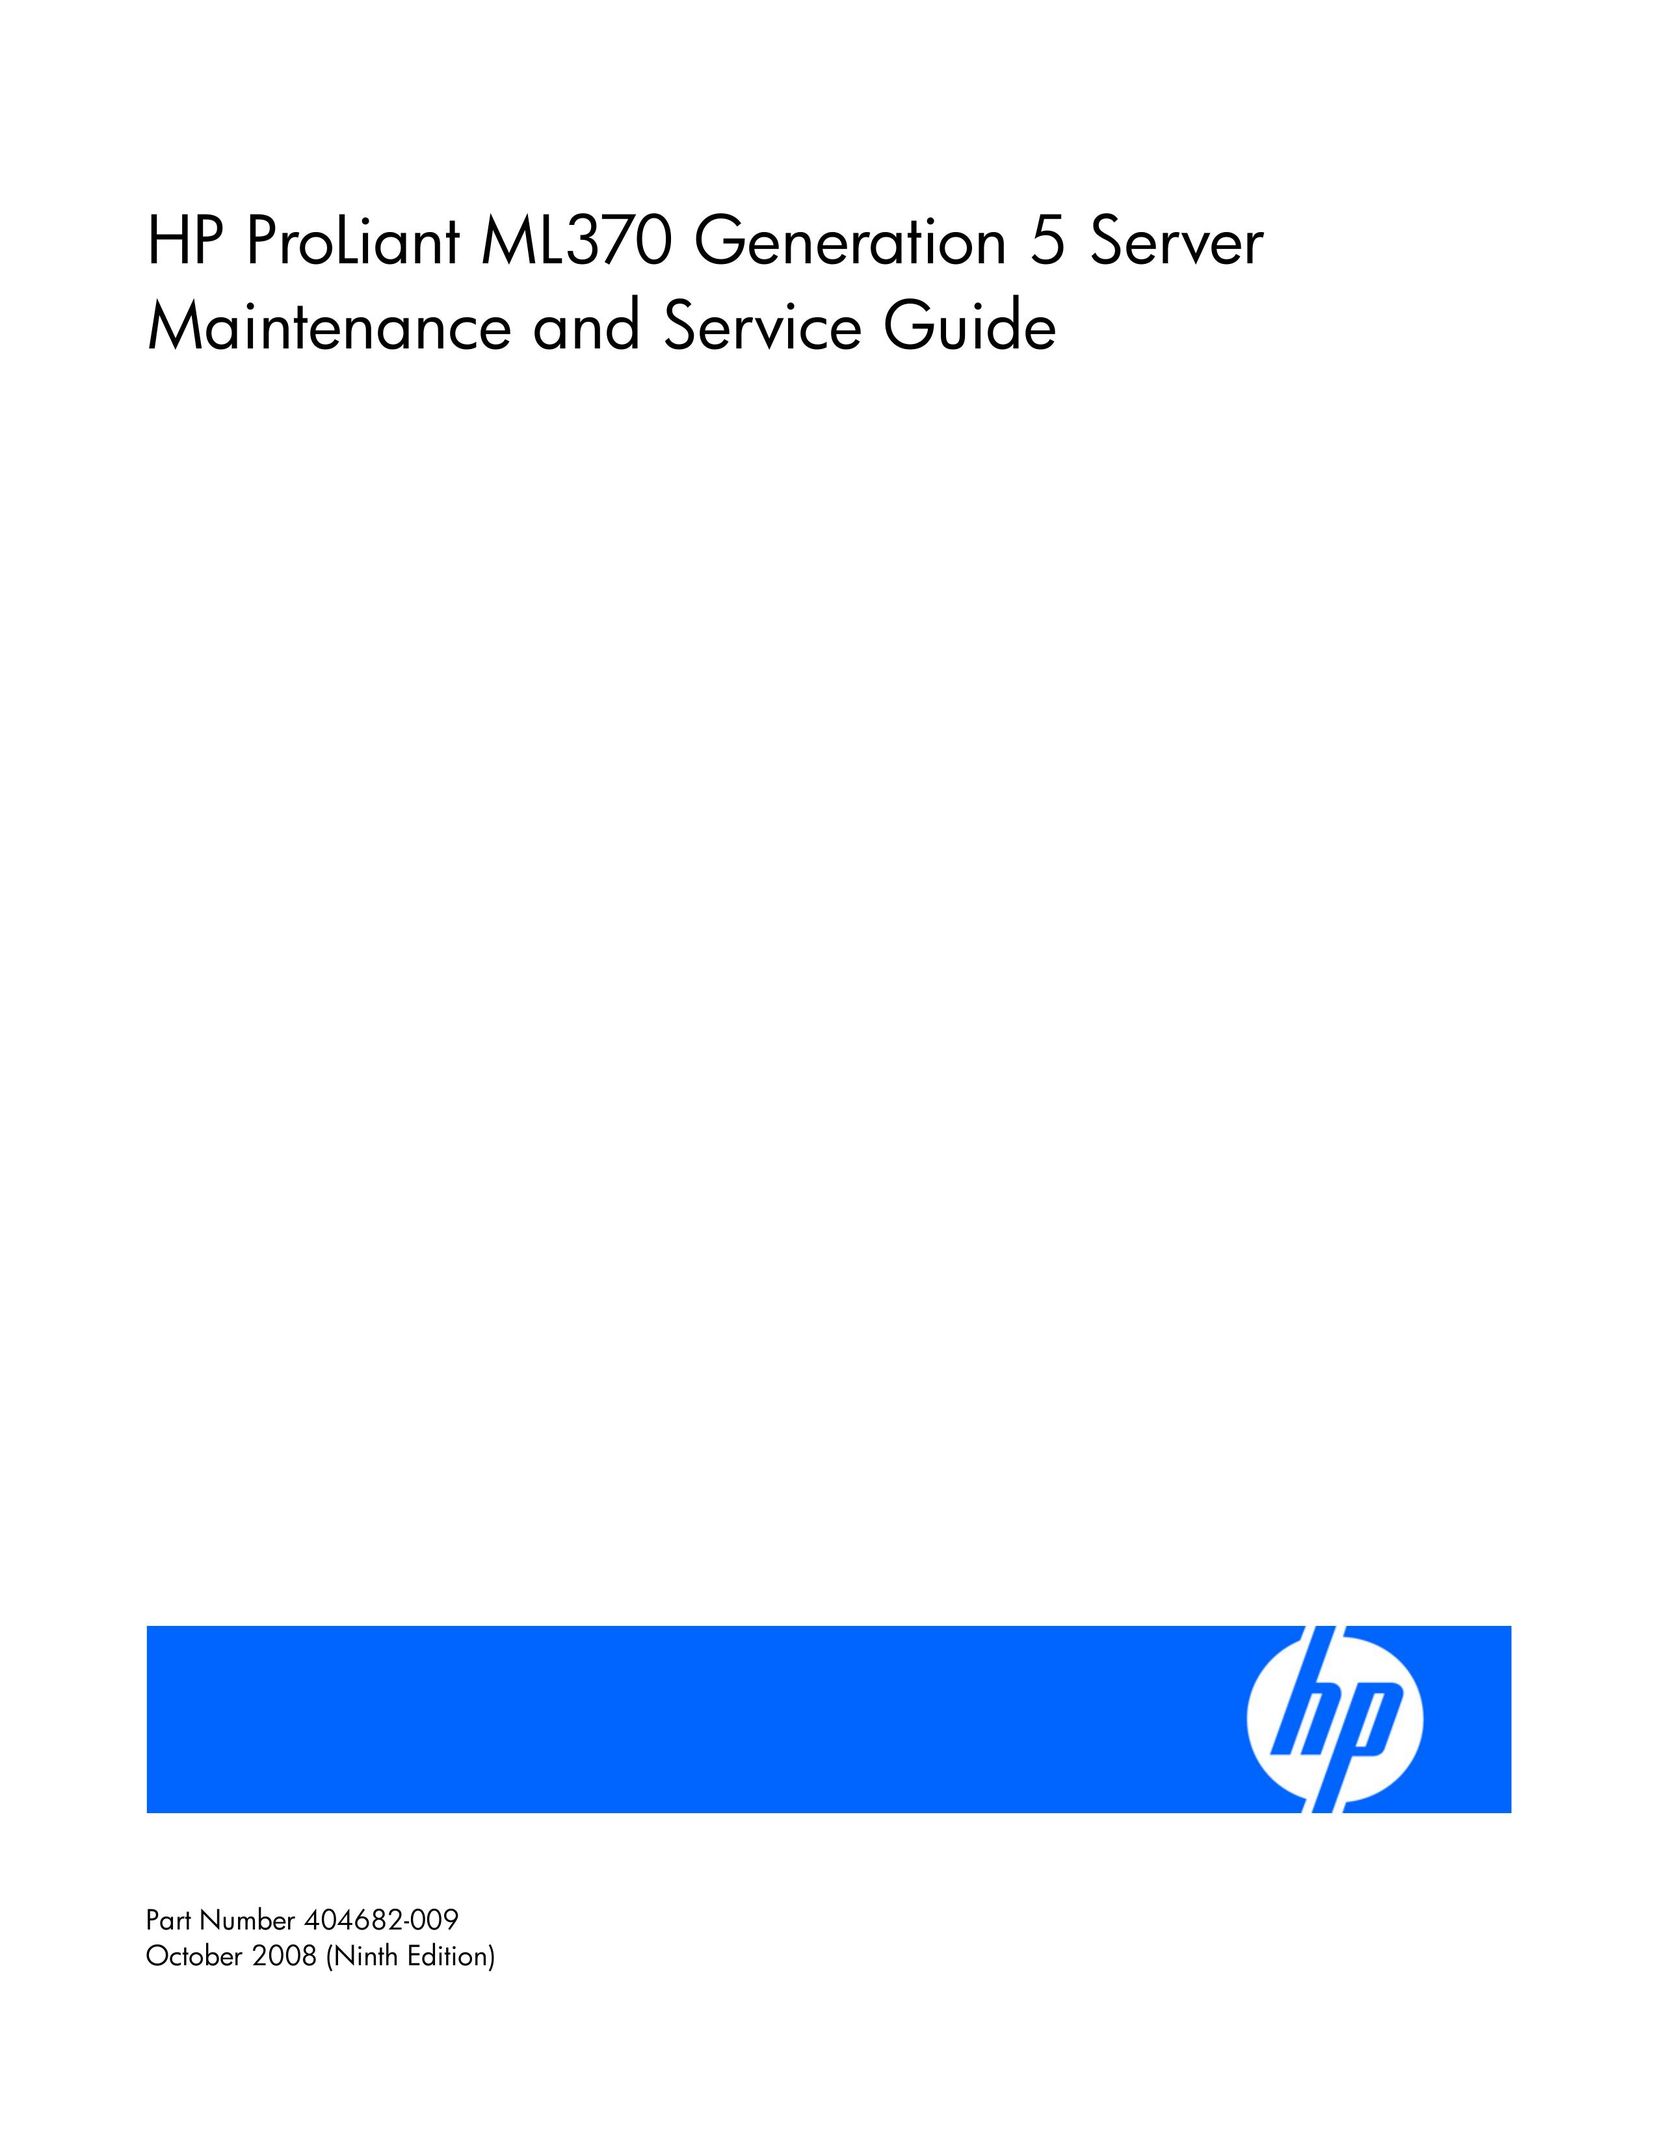 HP (Hewlett-Packard) ML370 Webcam User Manual